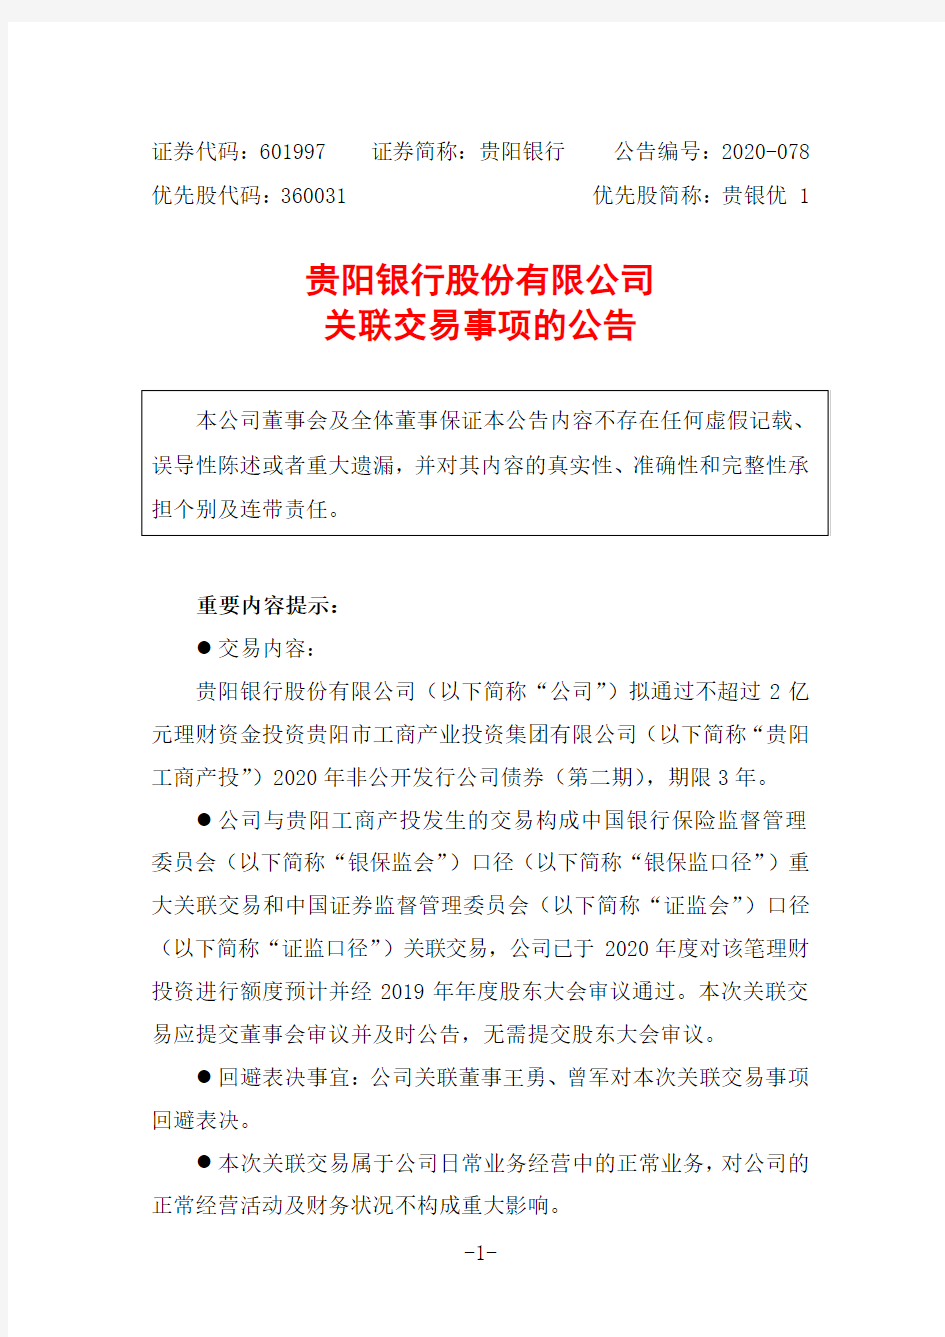 601997贵阳银行股份有限公司关联交易事项的公告2020-11-18